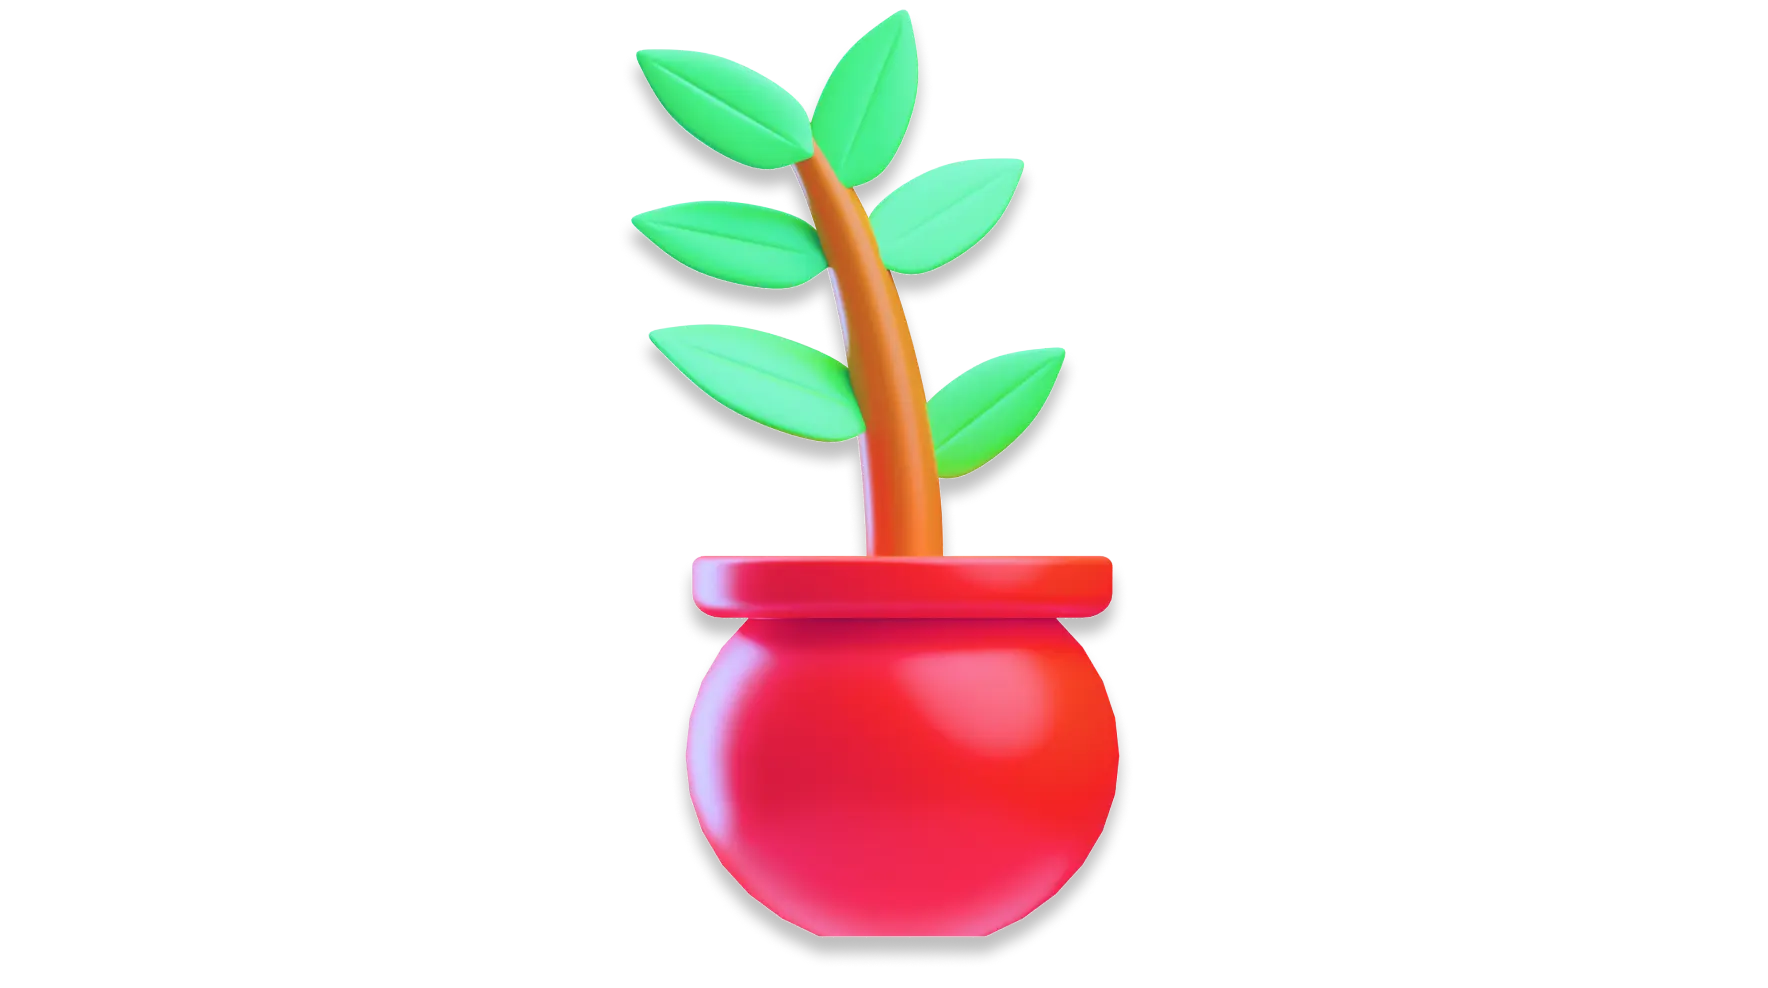 Plant